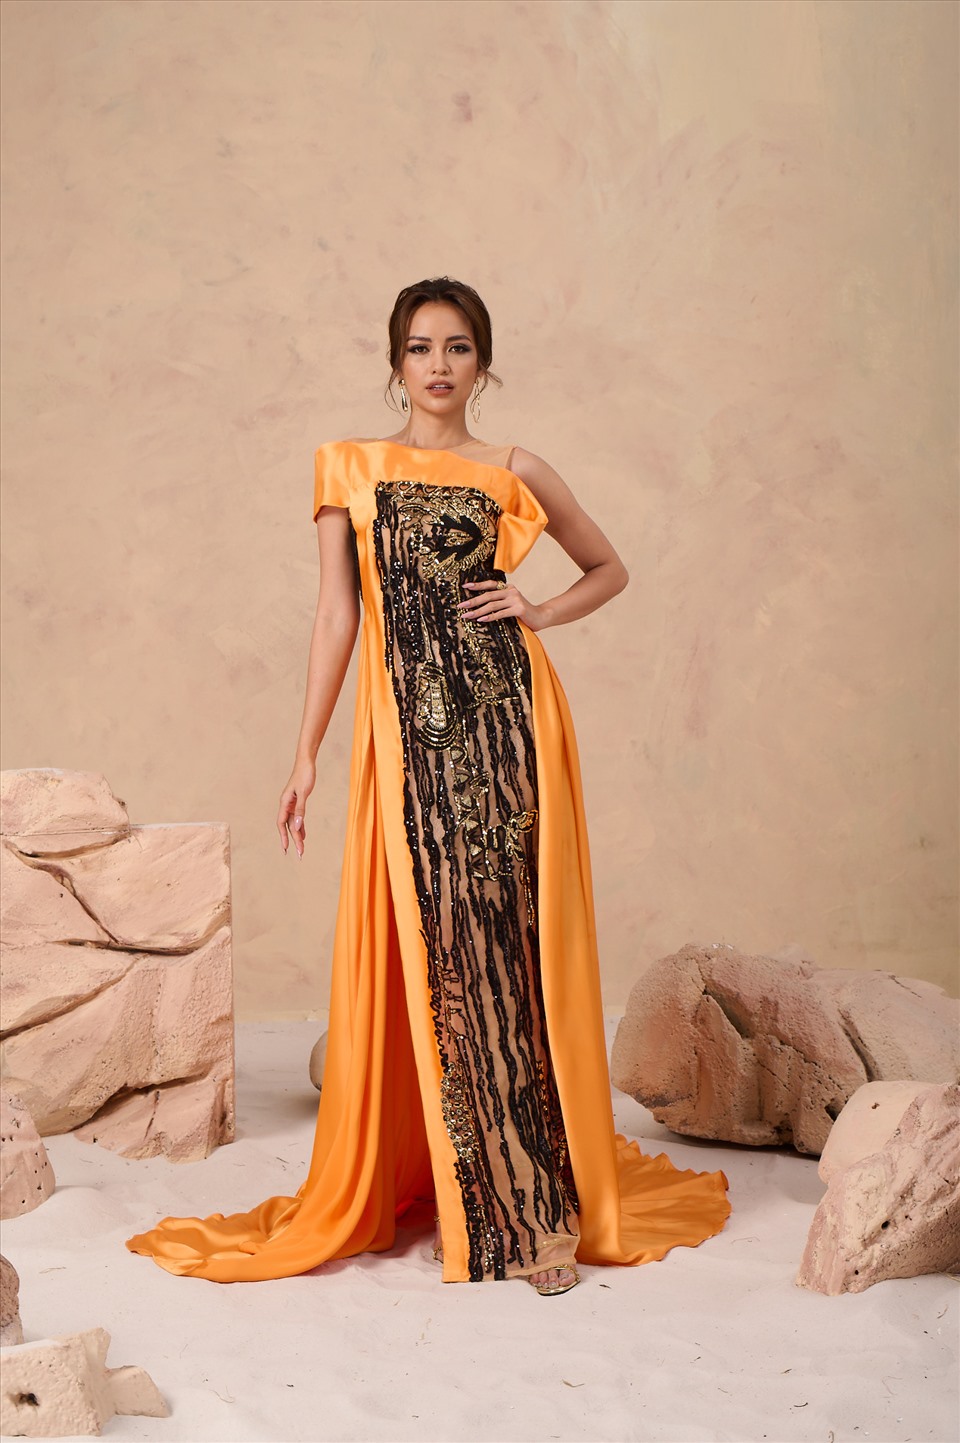 Các mẫu thiết kế của Hoàng Hải là sự lựa chọn của hàng loạt Hoa hậu, doanh nhân và các người đẹp nổi tiếng trong nước lẫn quốc tế.